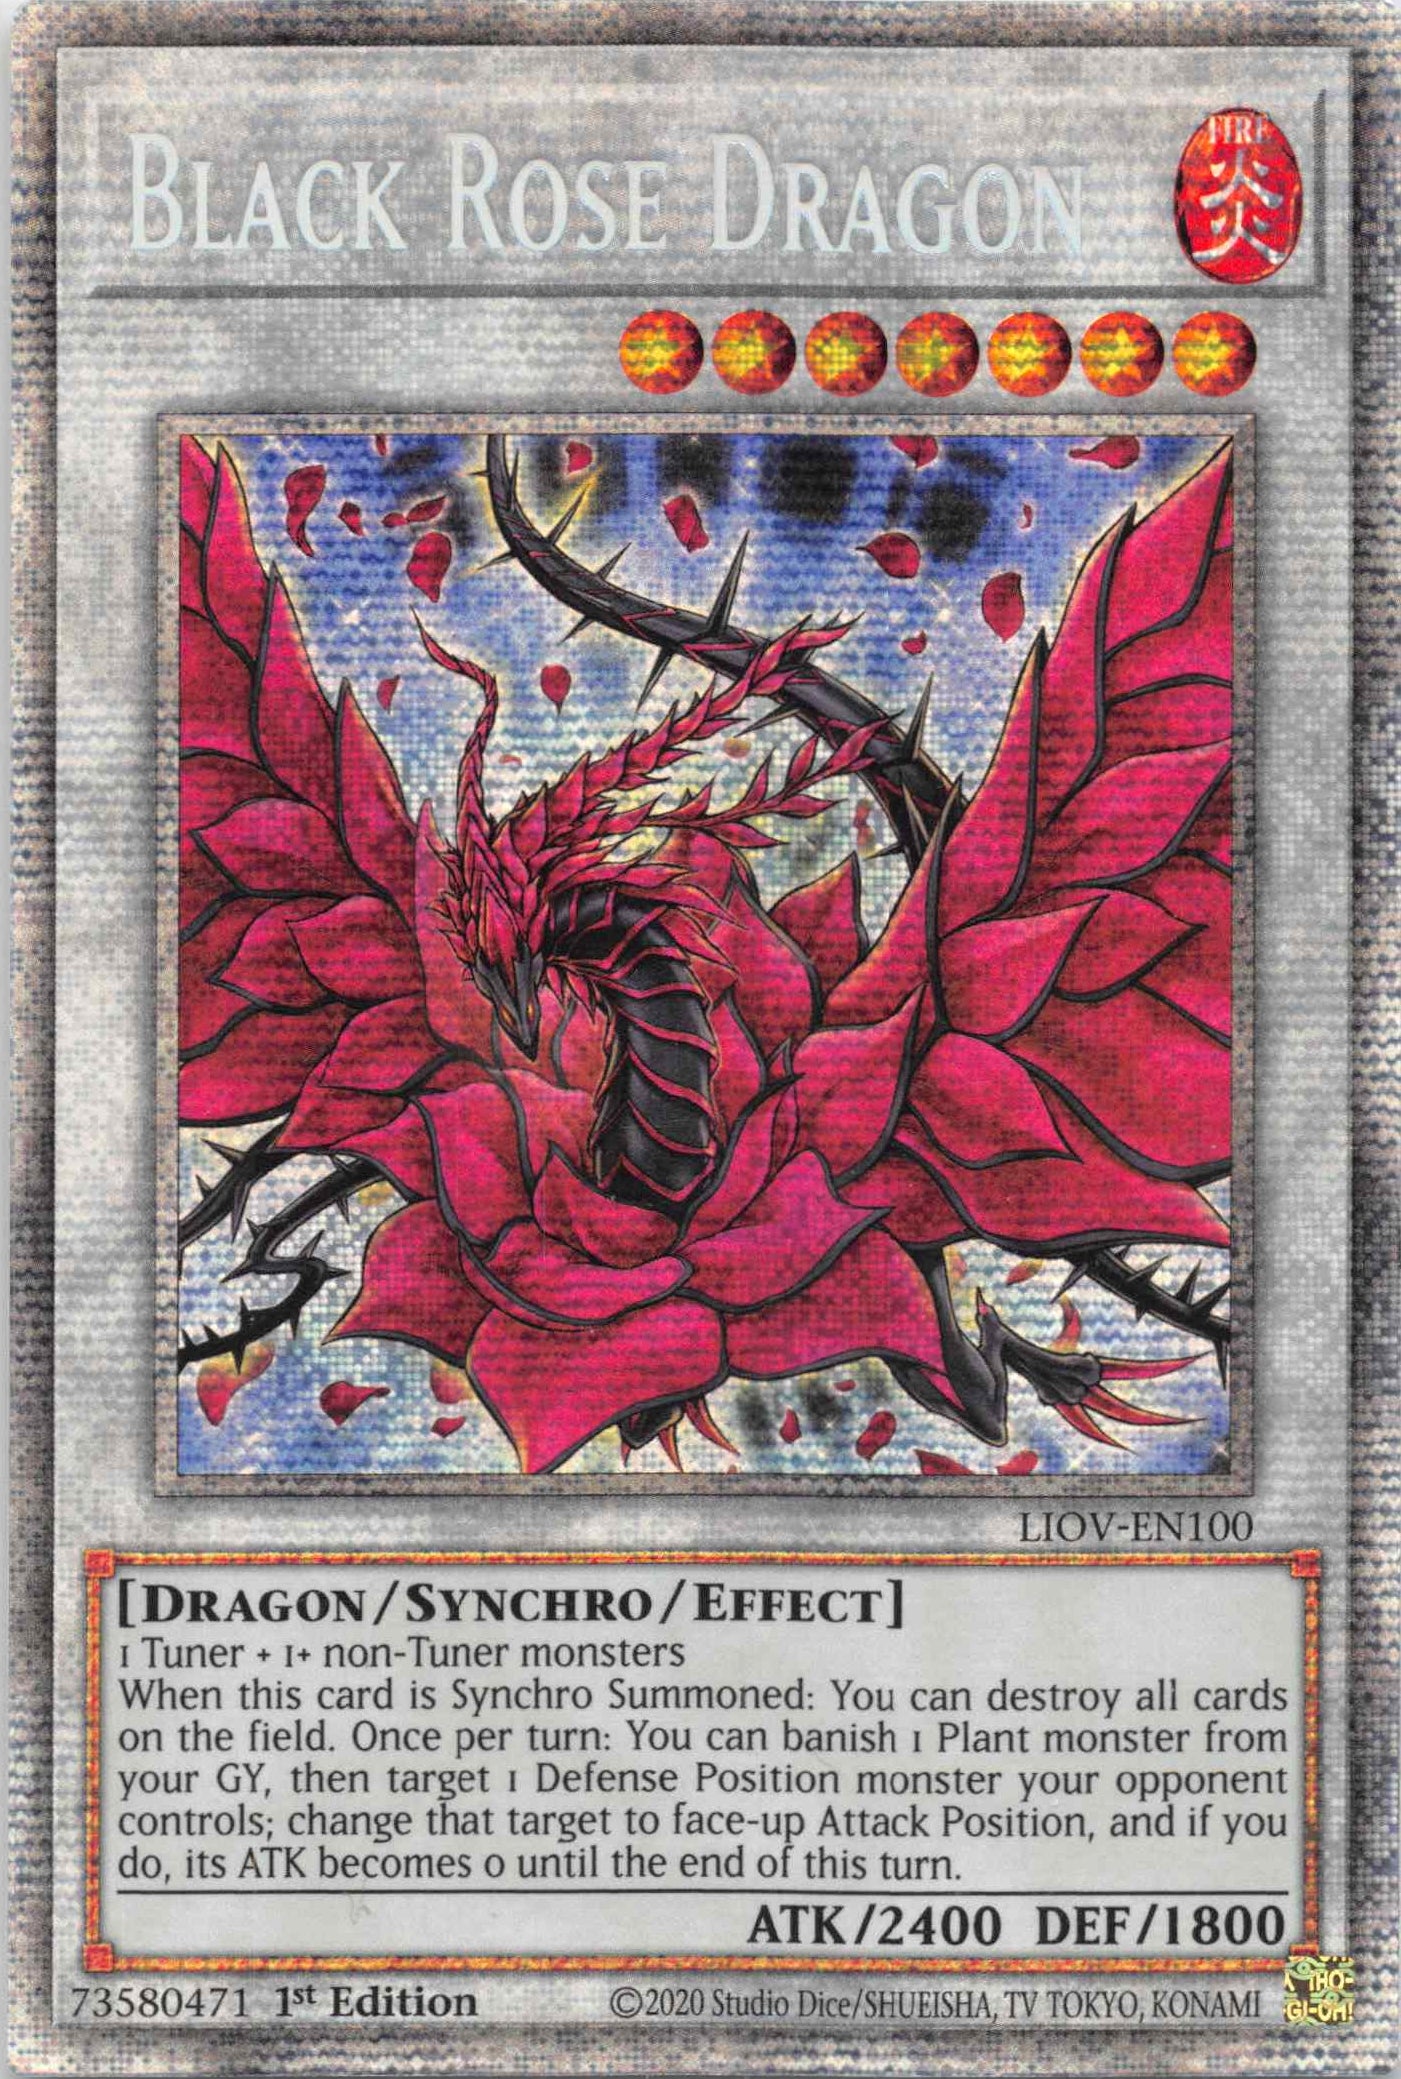 Black Rose Dragon [LIOV-EN100] Starlight Rare | Play N Trade Winnipeg